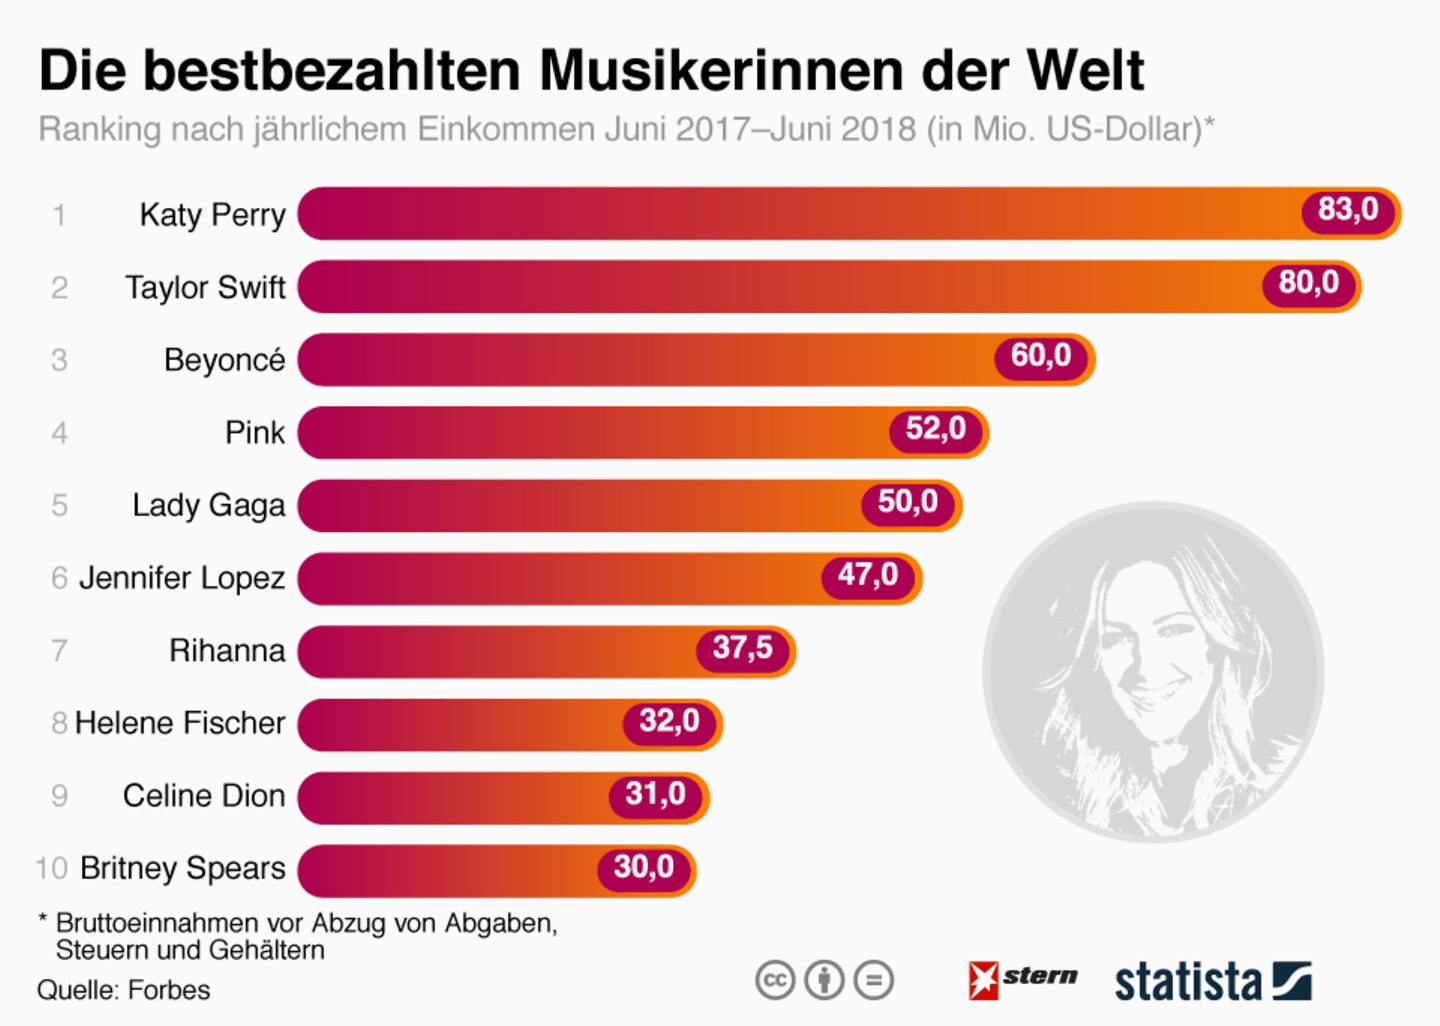 Forbes-Ranking: Helene Fischer verdient mehr als Britney Spears und Celine Dion